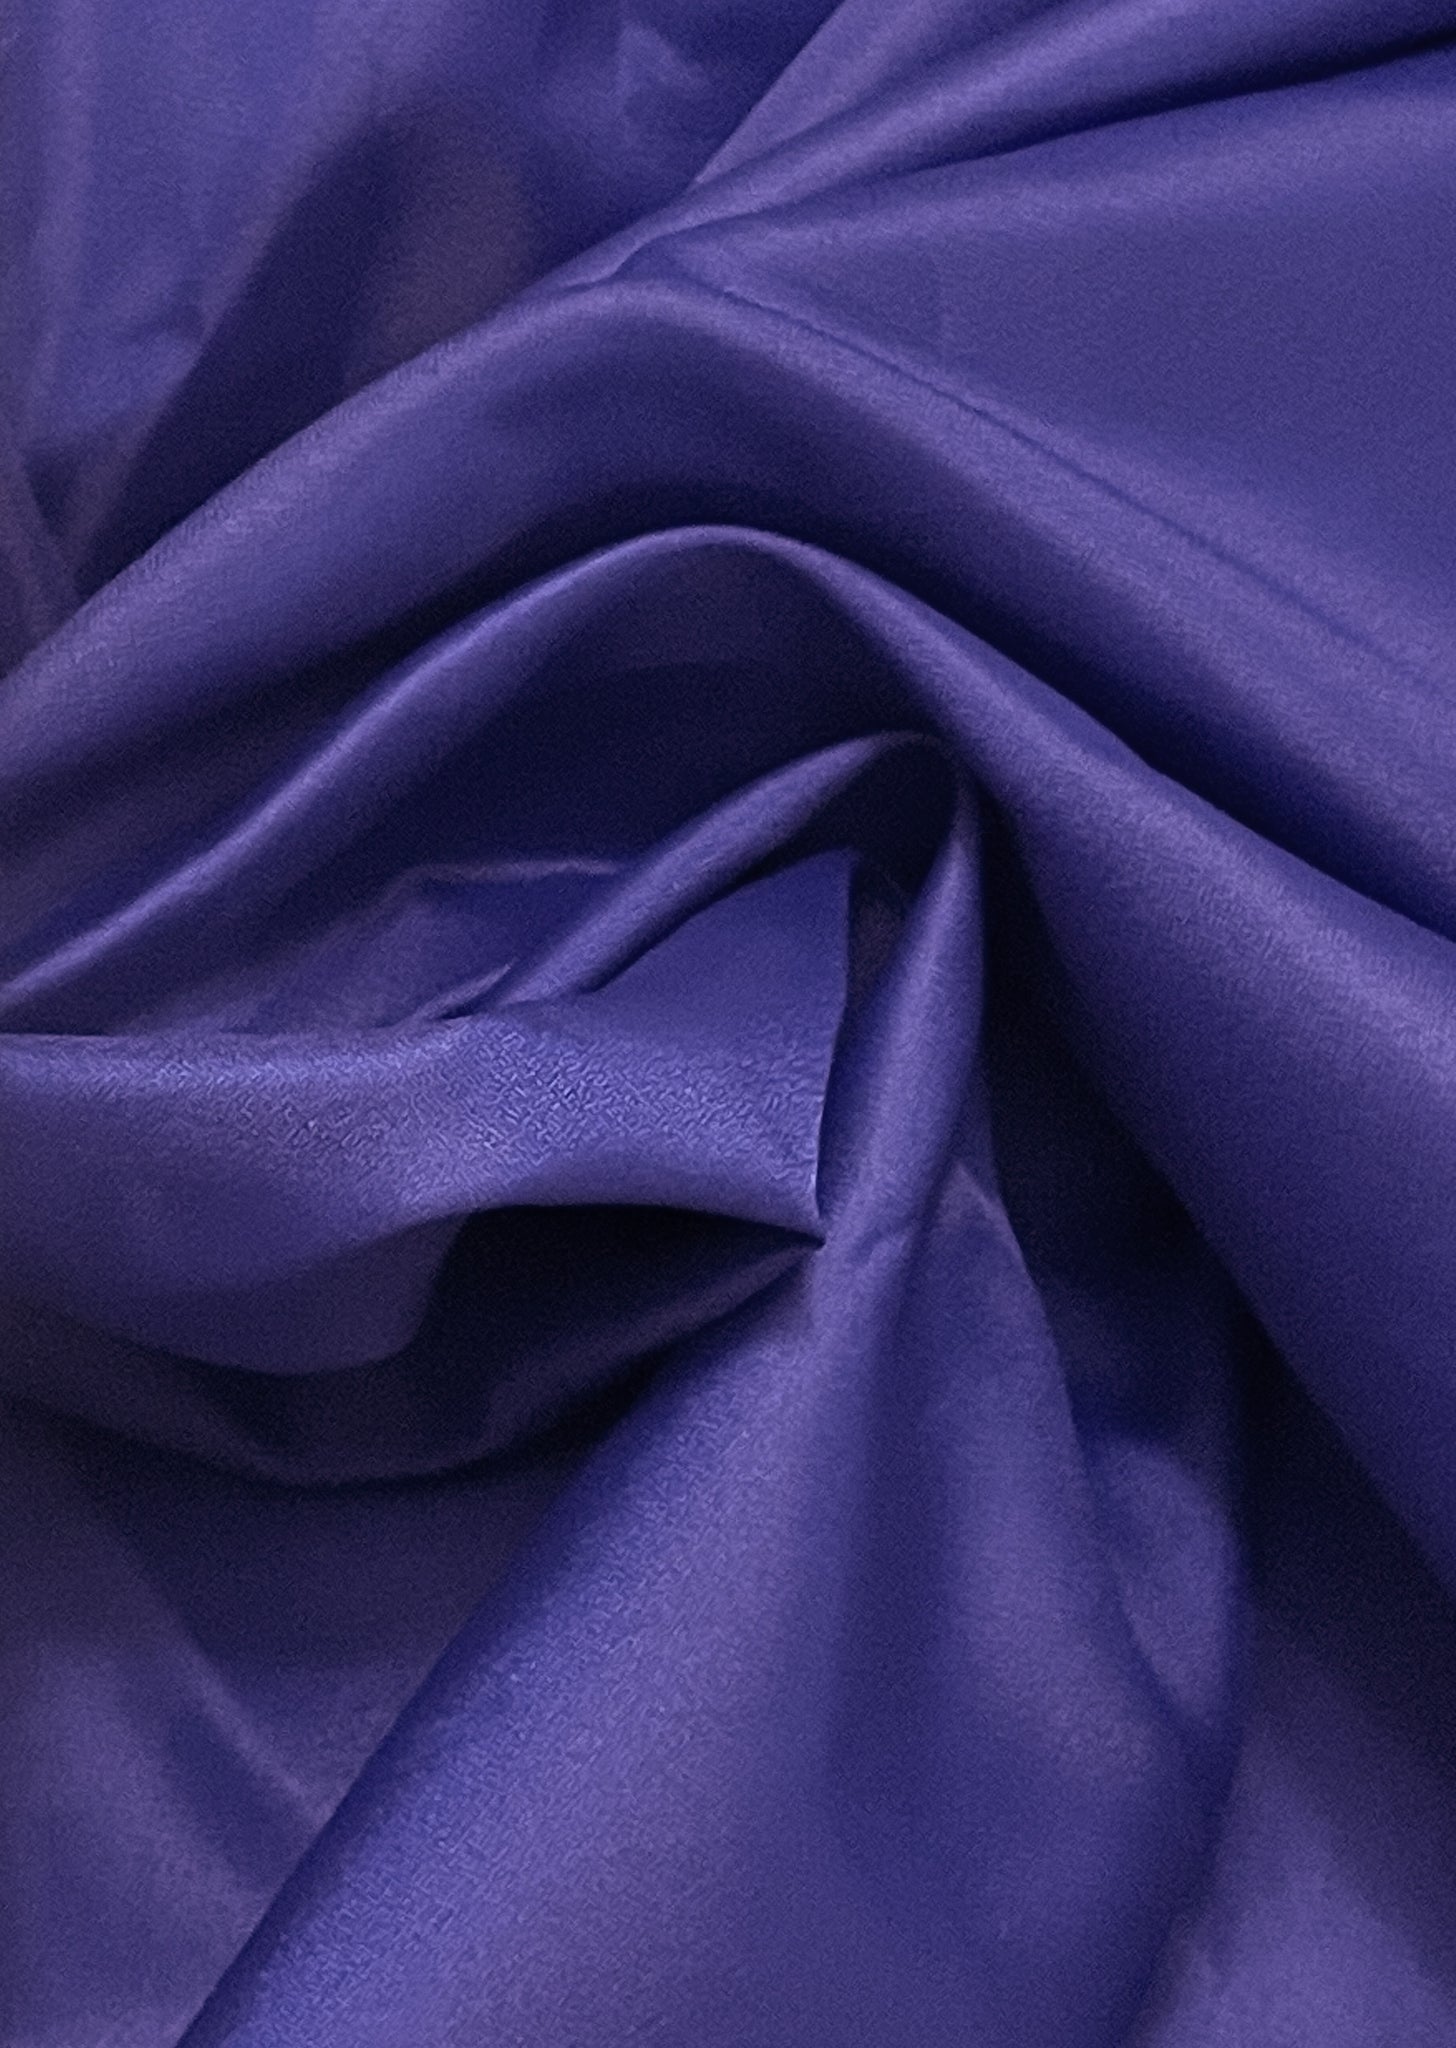 2 1/4 YD Polyester - Royal Blue